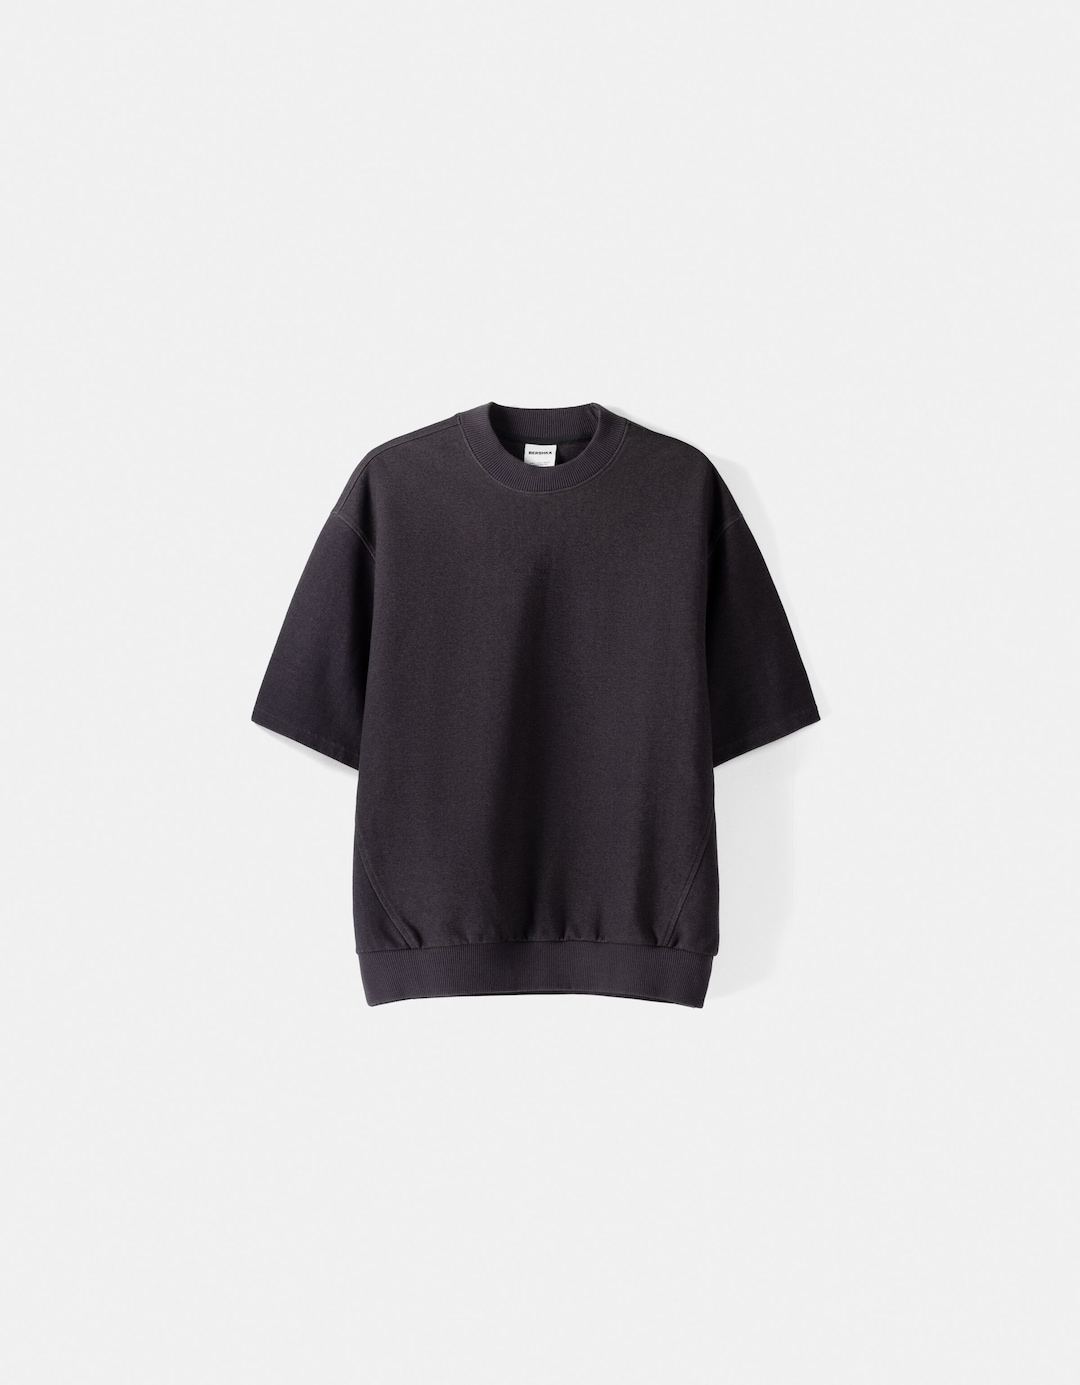 Plüsch-T-Shirt aus Interlock im Washed-Look mit kurzen Ärmeln und Patentmuster